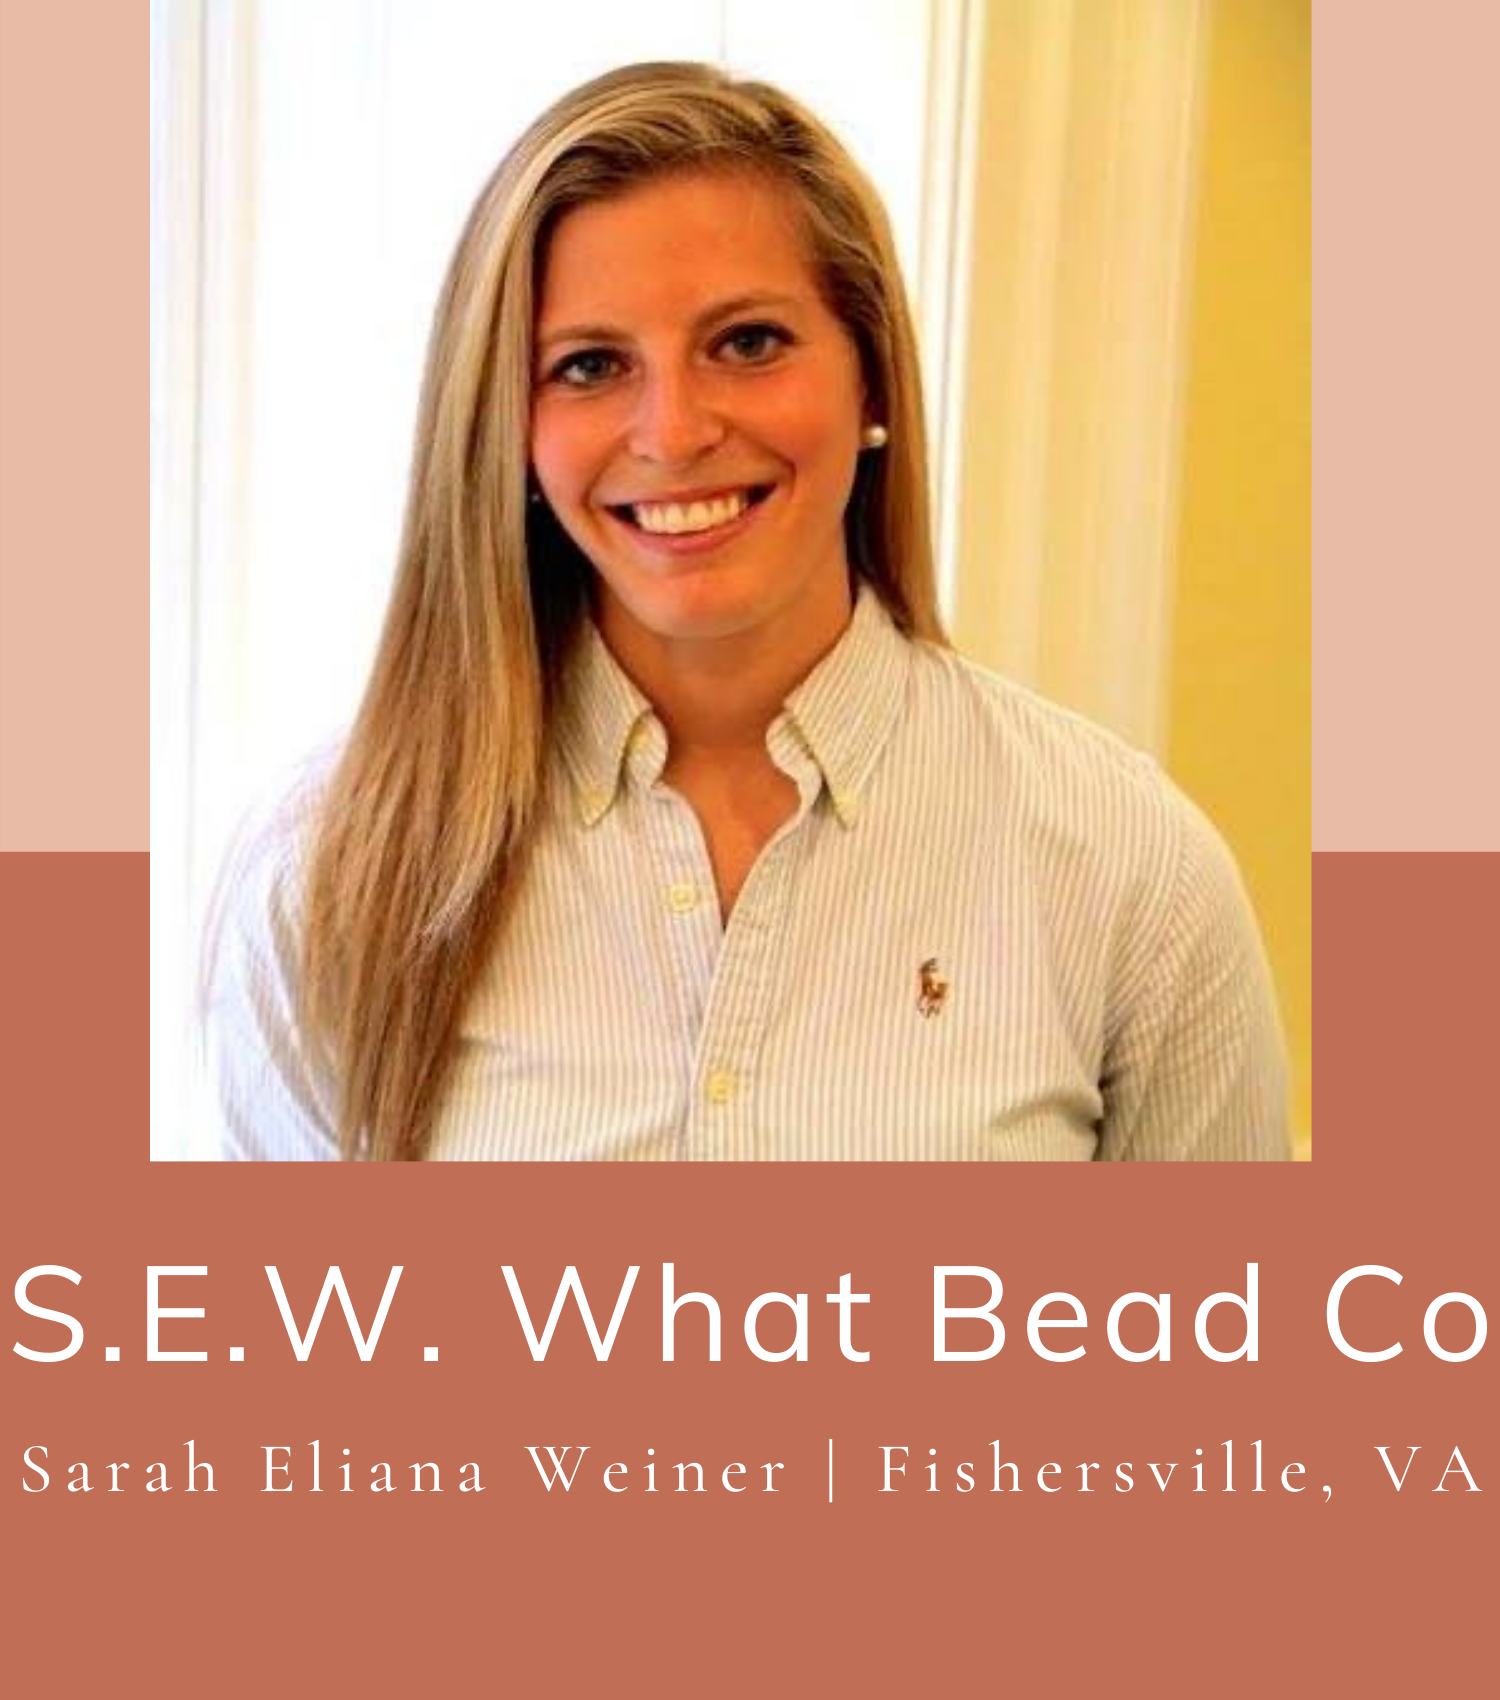 S.E.W. What Bead Company